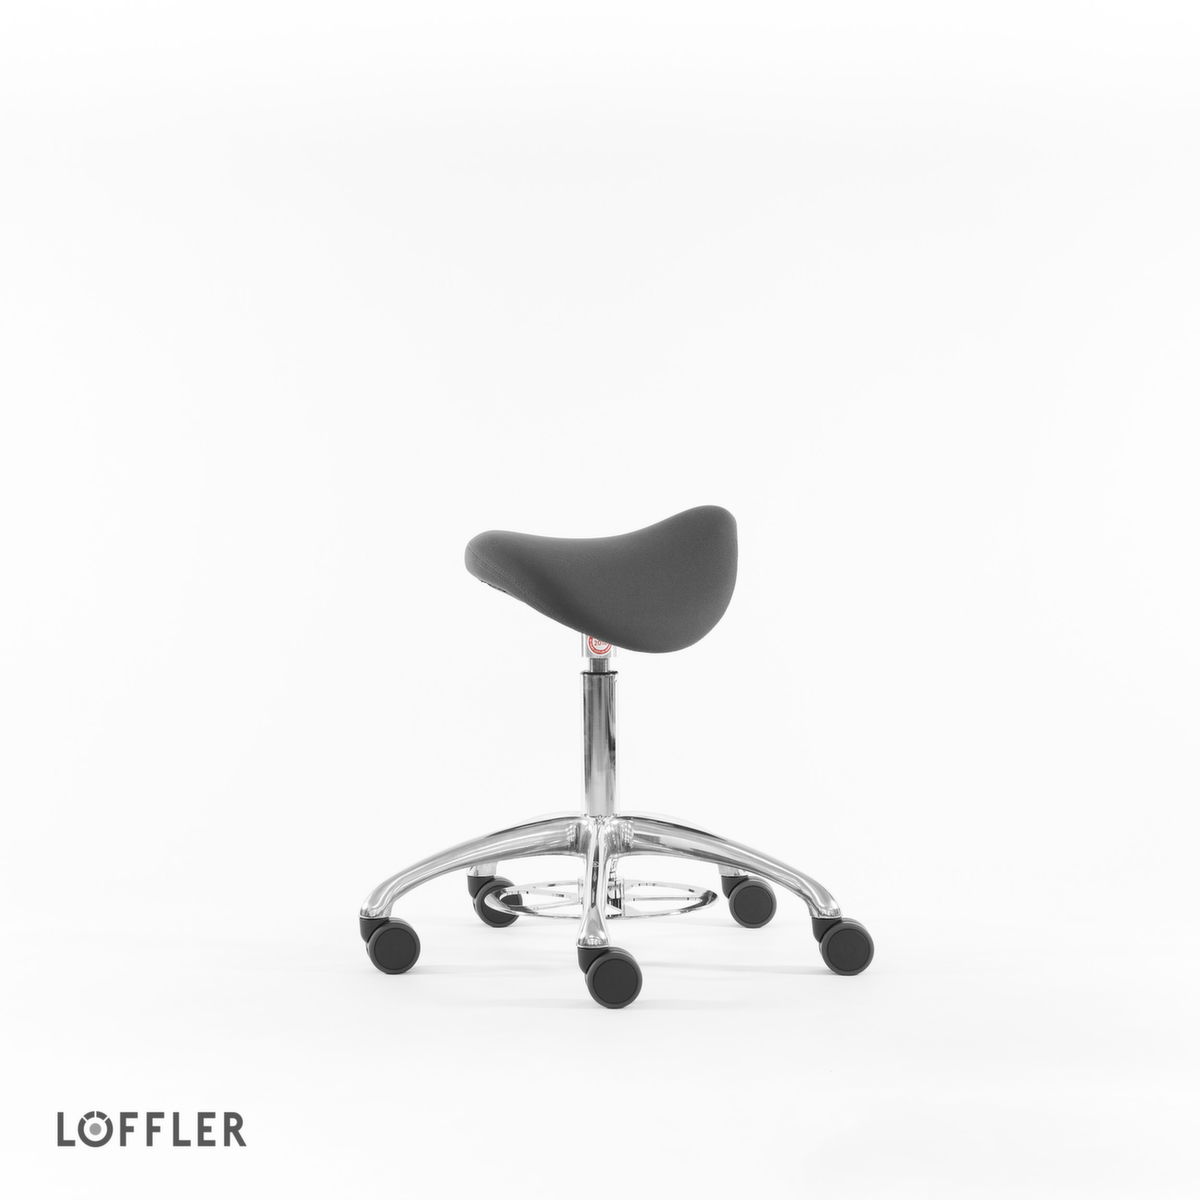 Löffler Sattelsitzhocker Sedlo mit Fußauslösung, Sitz grau, Rollen Standard 2 ZOOM